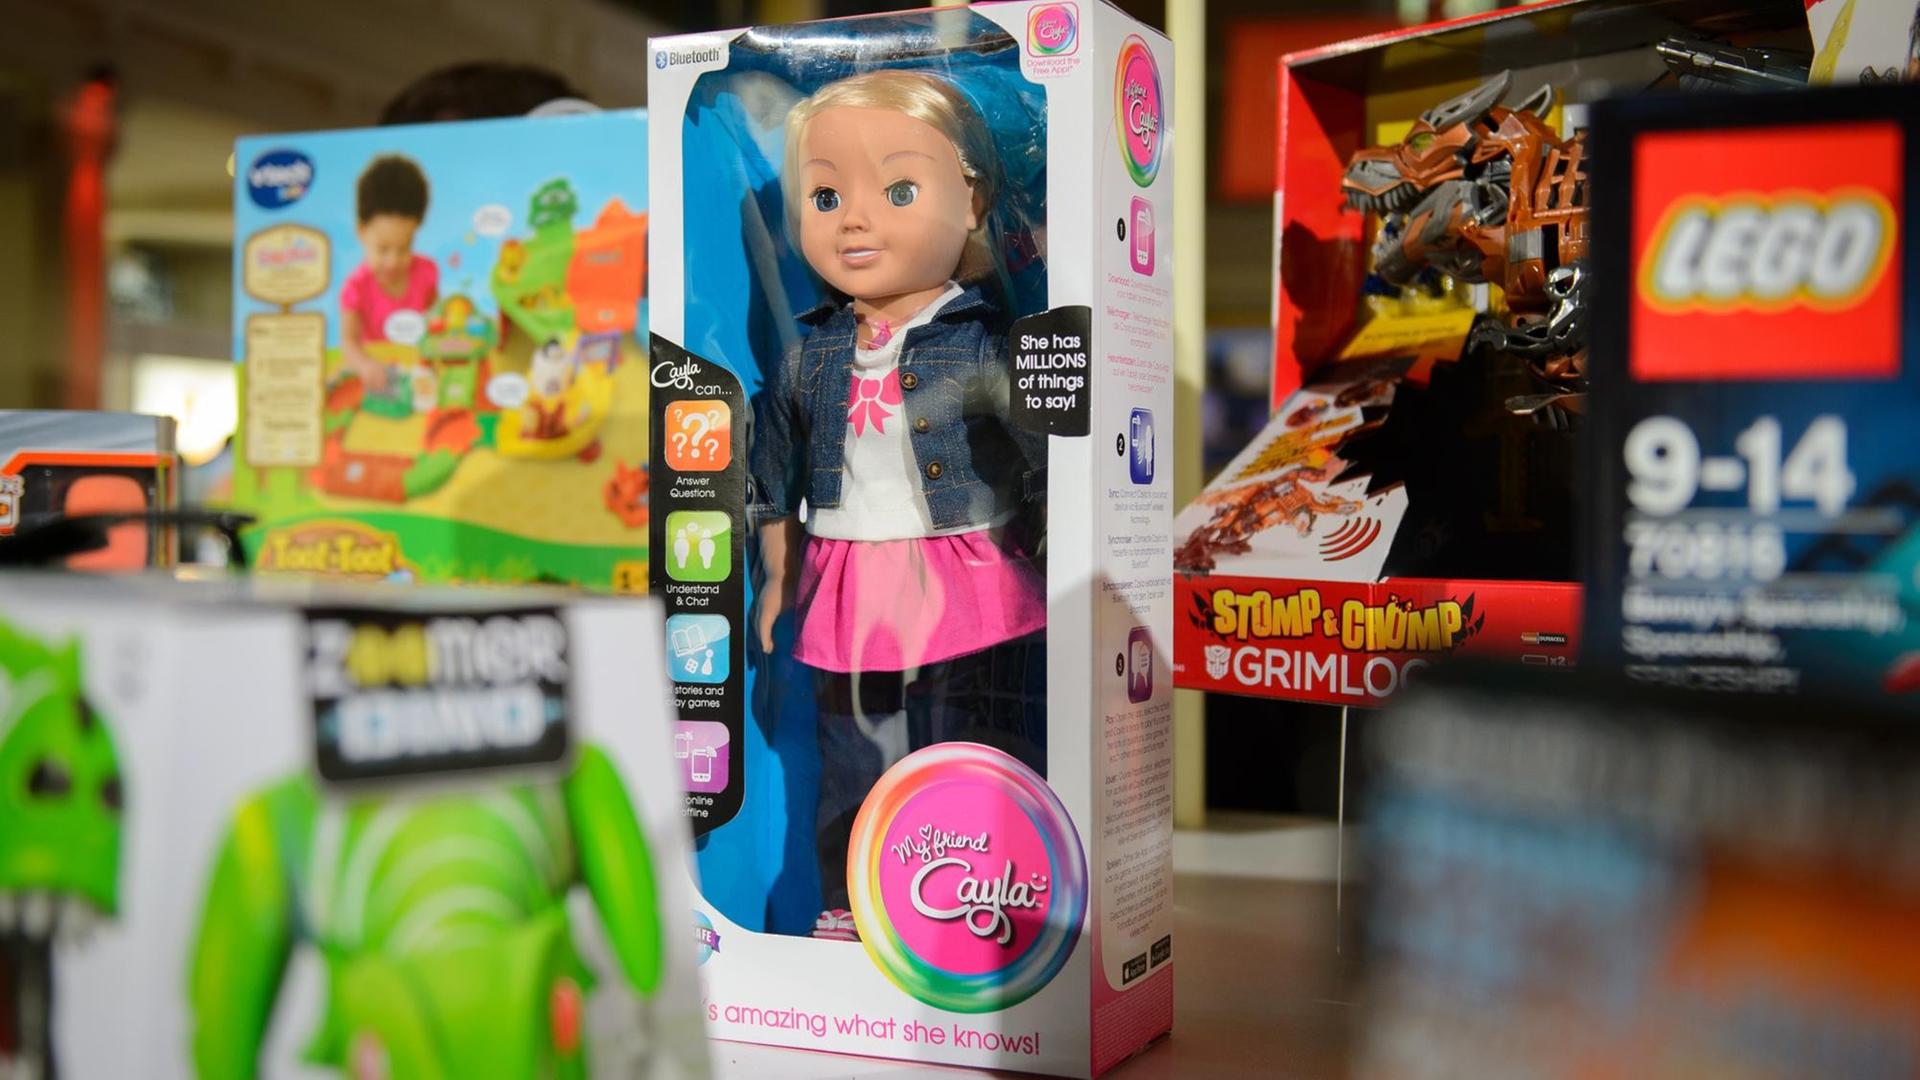 Die Puppe "Cayla" in Originalverpackung zwischen anderem Spielzeug.